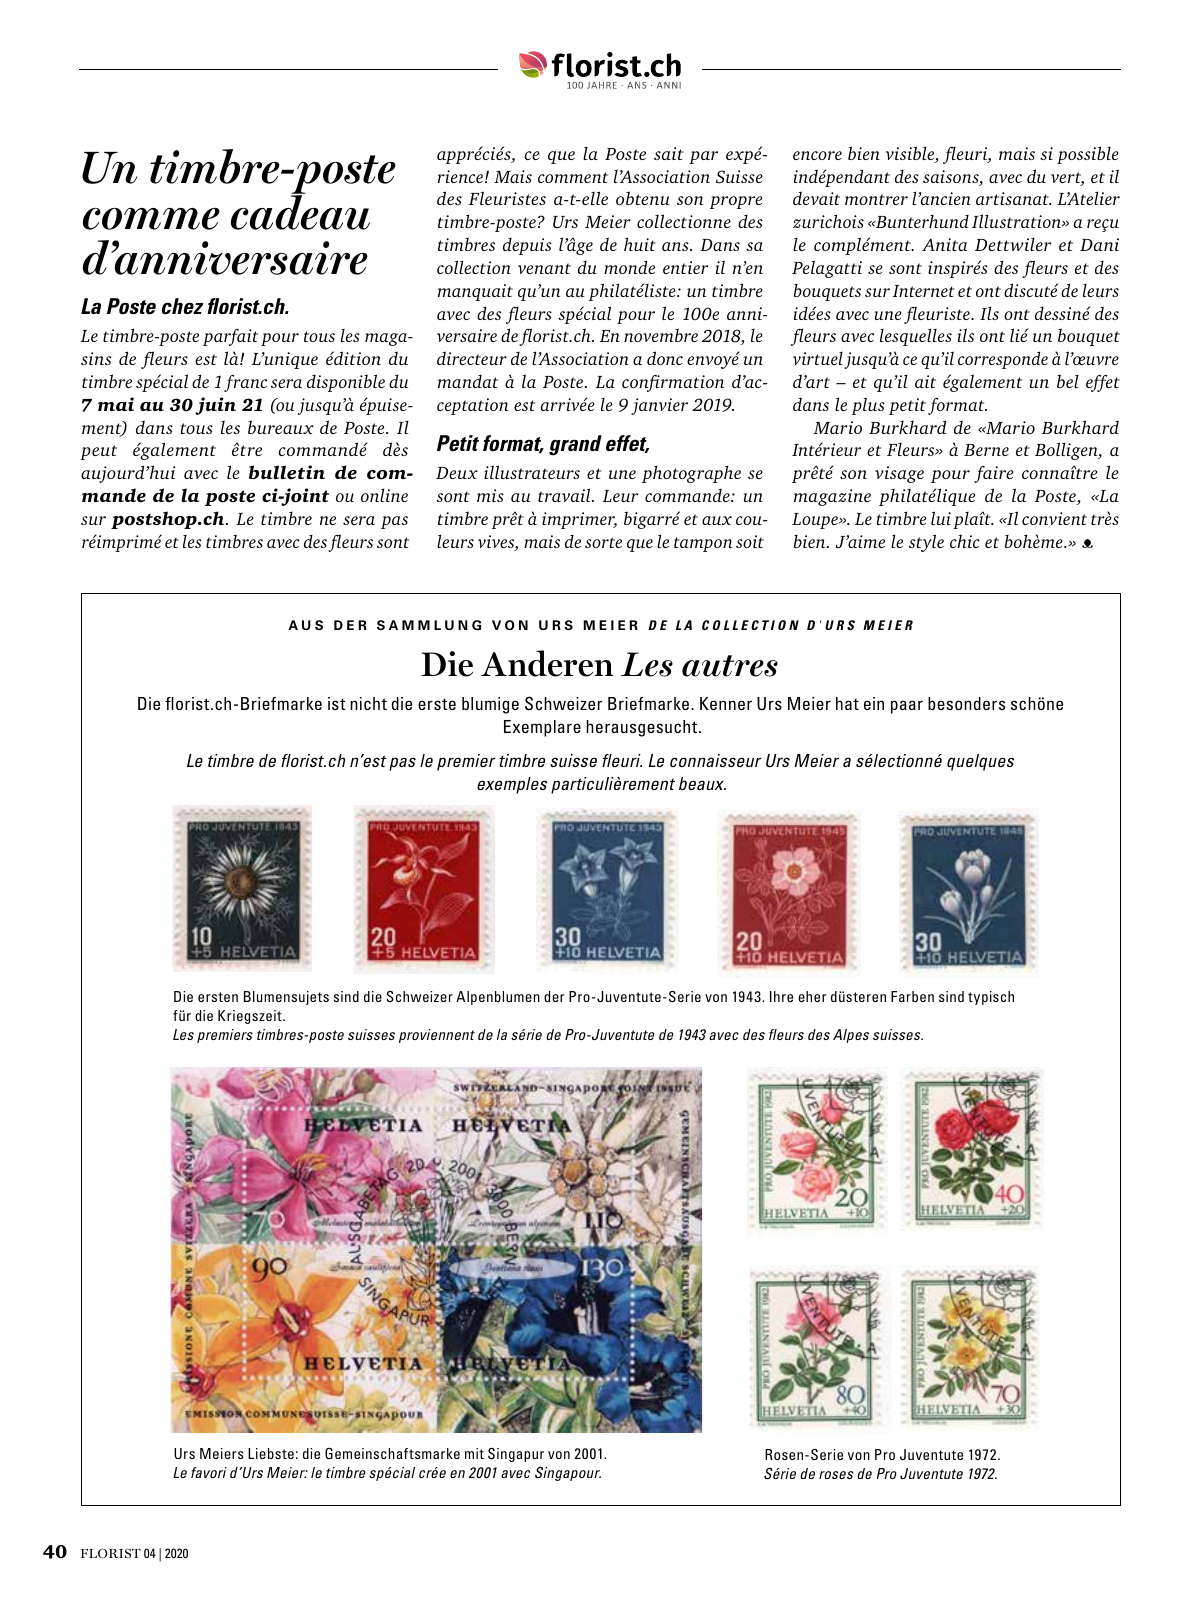 Vorschau Florist - Ausgabe April 2020 Seite 38